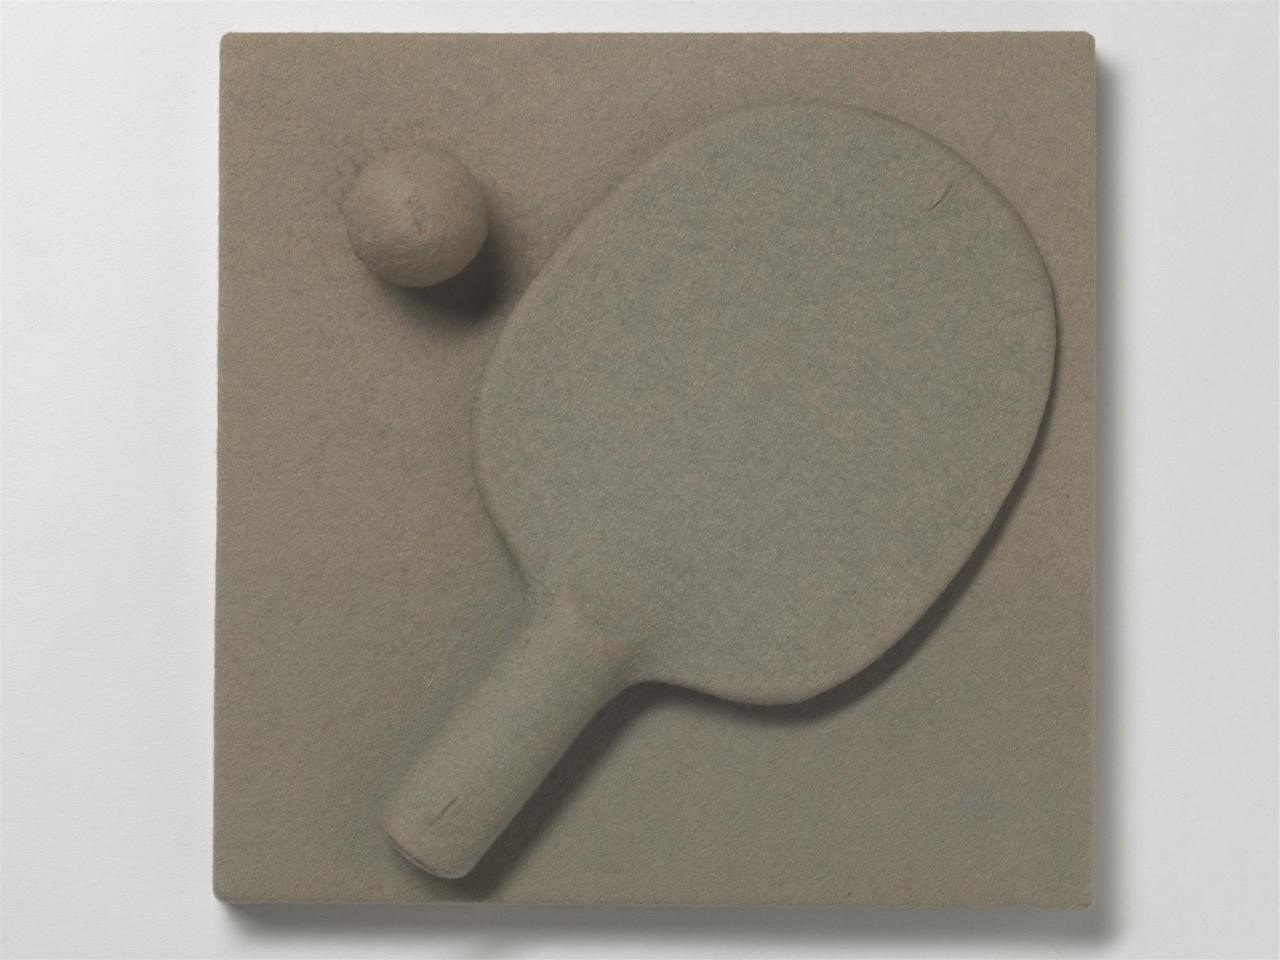 Een pingpongbatje en een pingpongbal overtrokken met vilt, het kunstwerk 'Zonder titel' van Wim T. Schippers uit 1965.